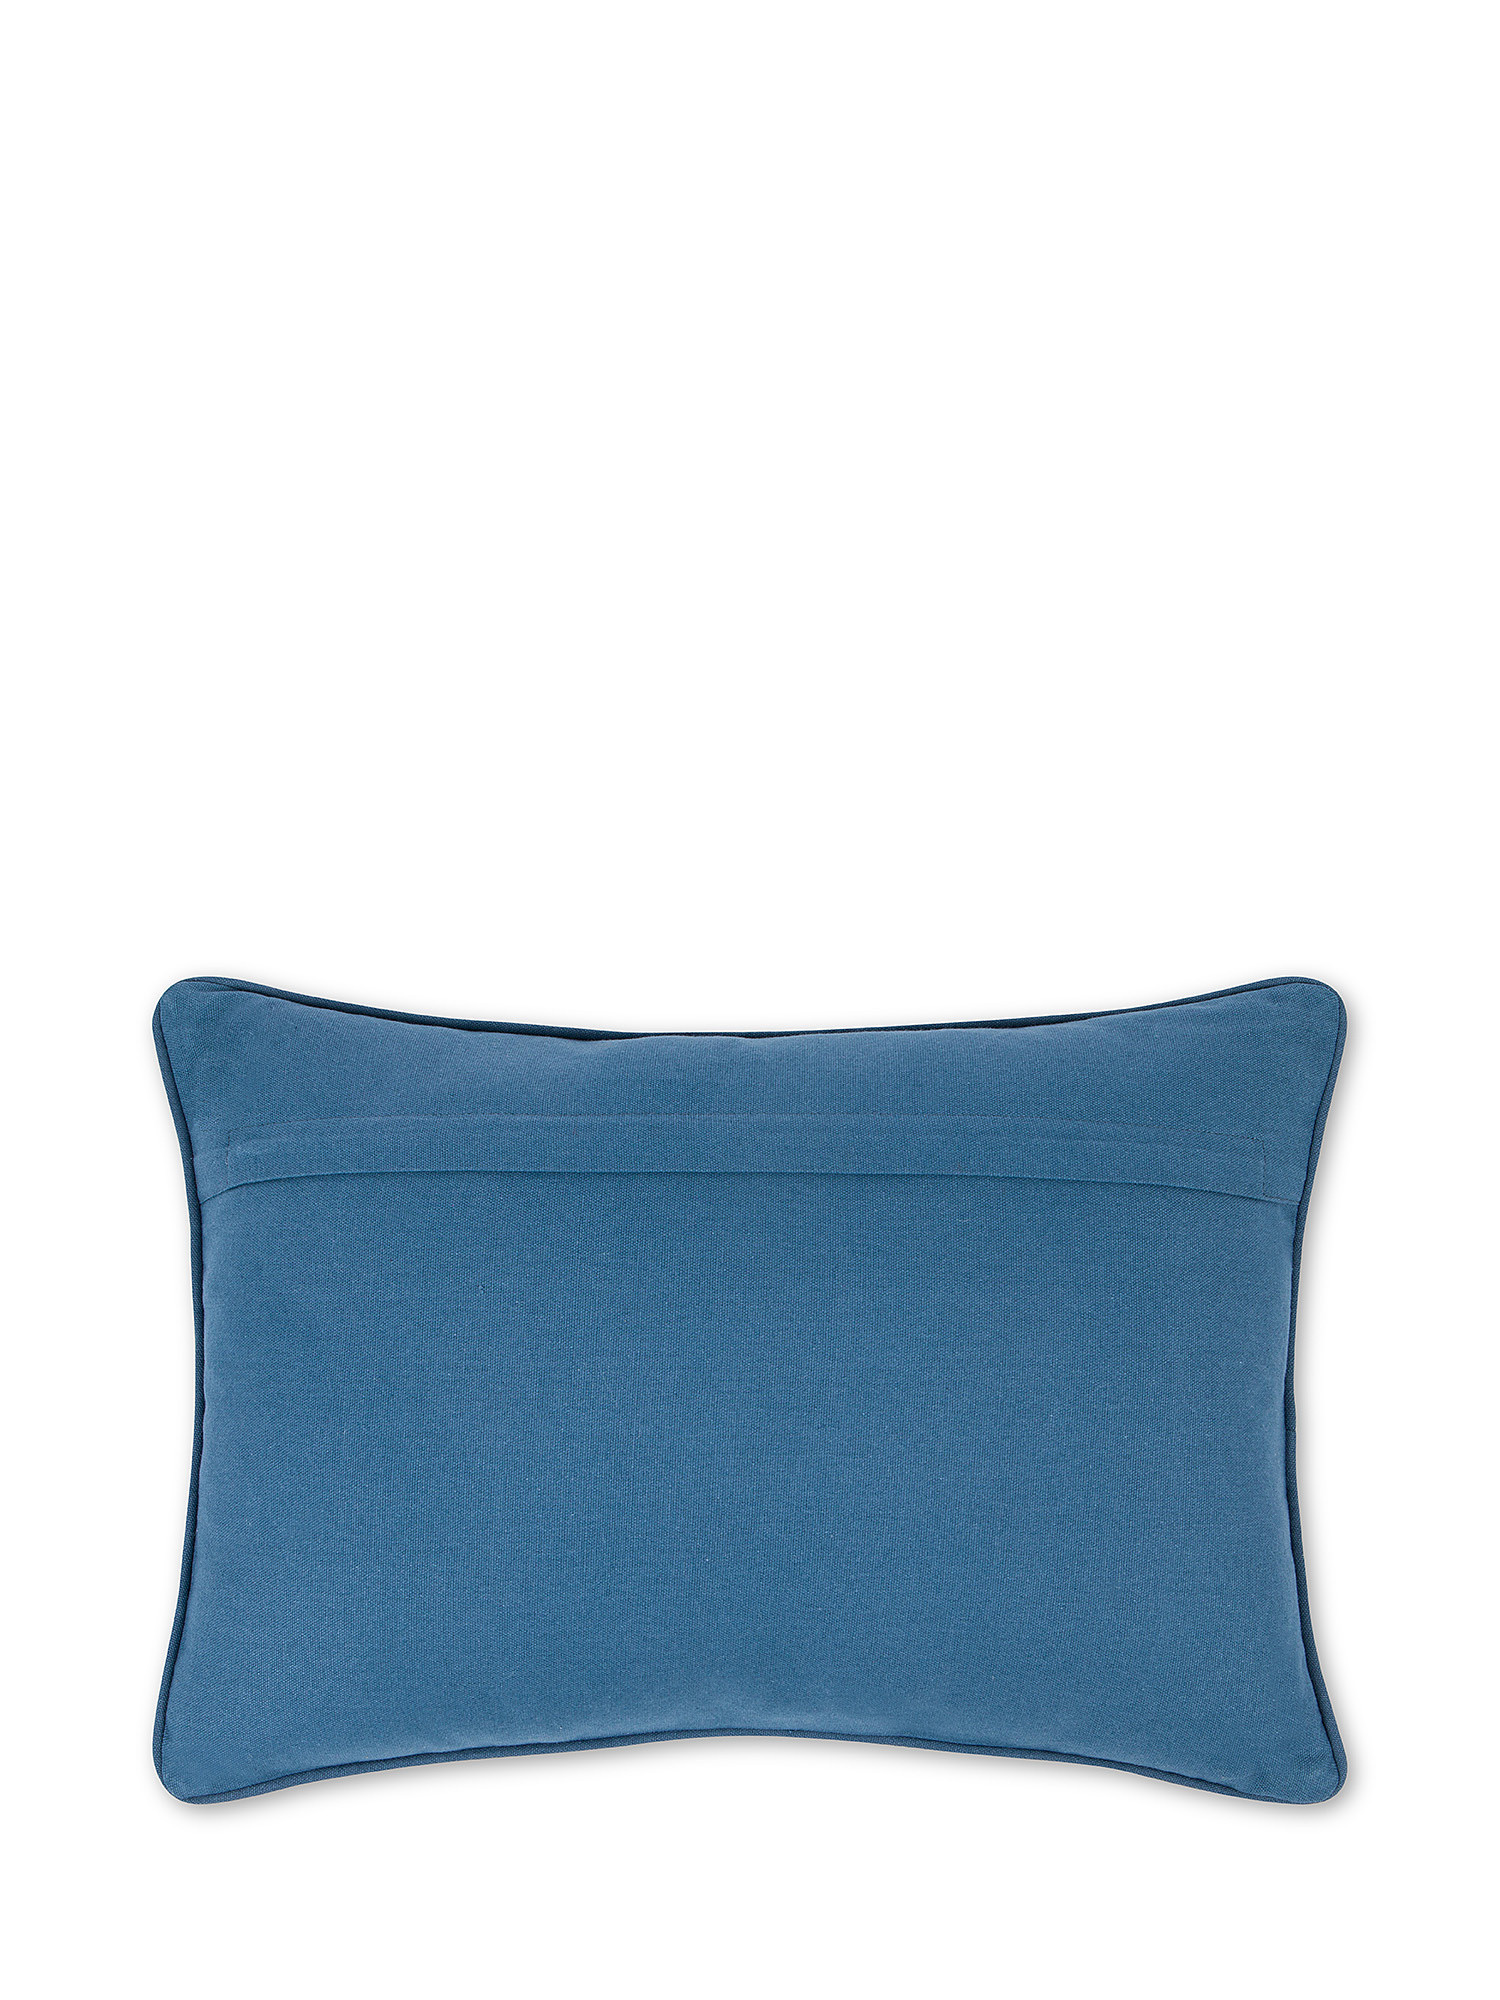 Cuscino 35X50 cm con applicazioni e ricami, Bianco/Azzurro, large image number 1